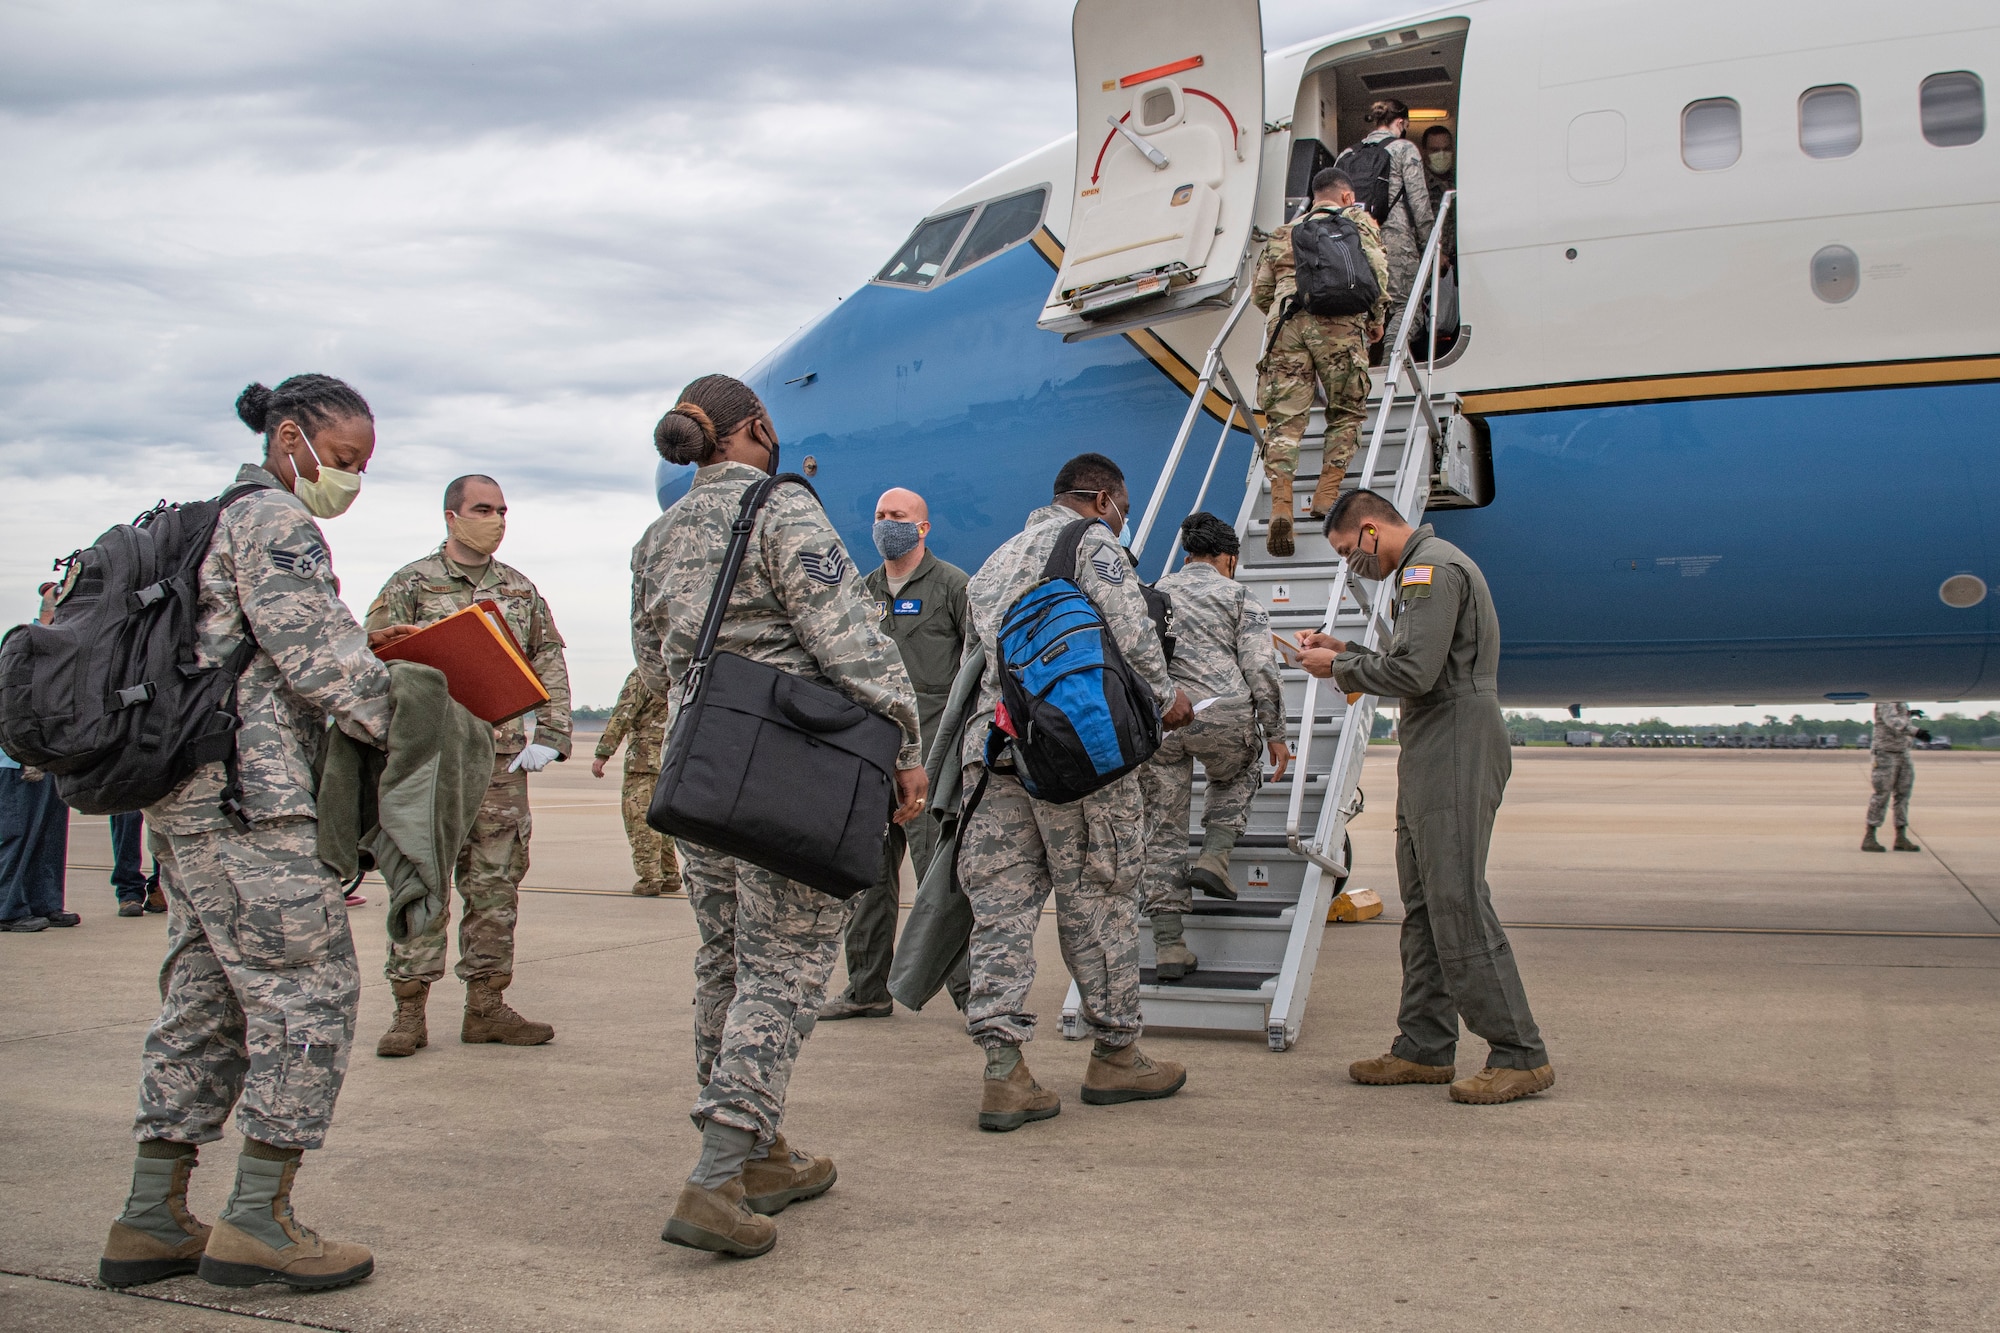 Airmen prepare to board a plane.